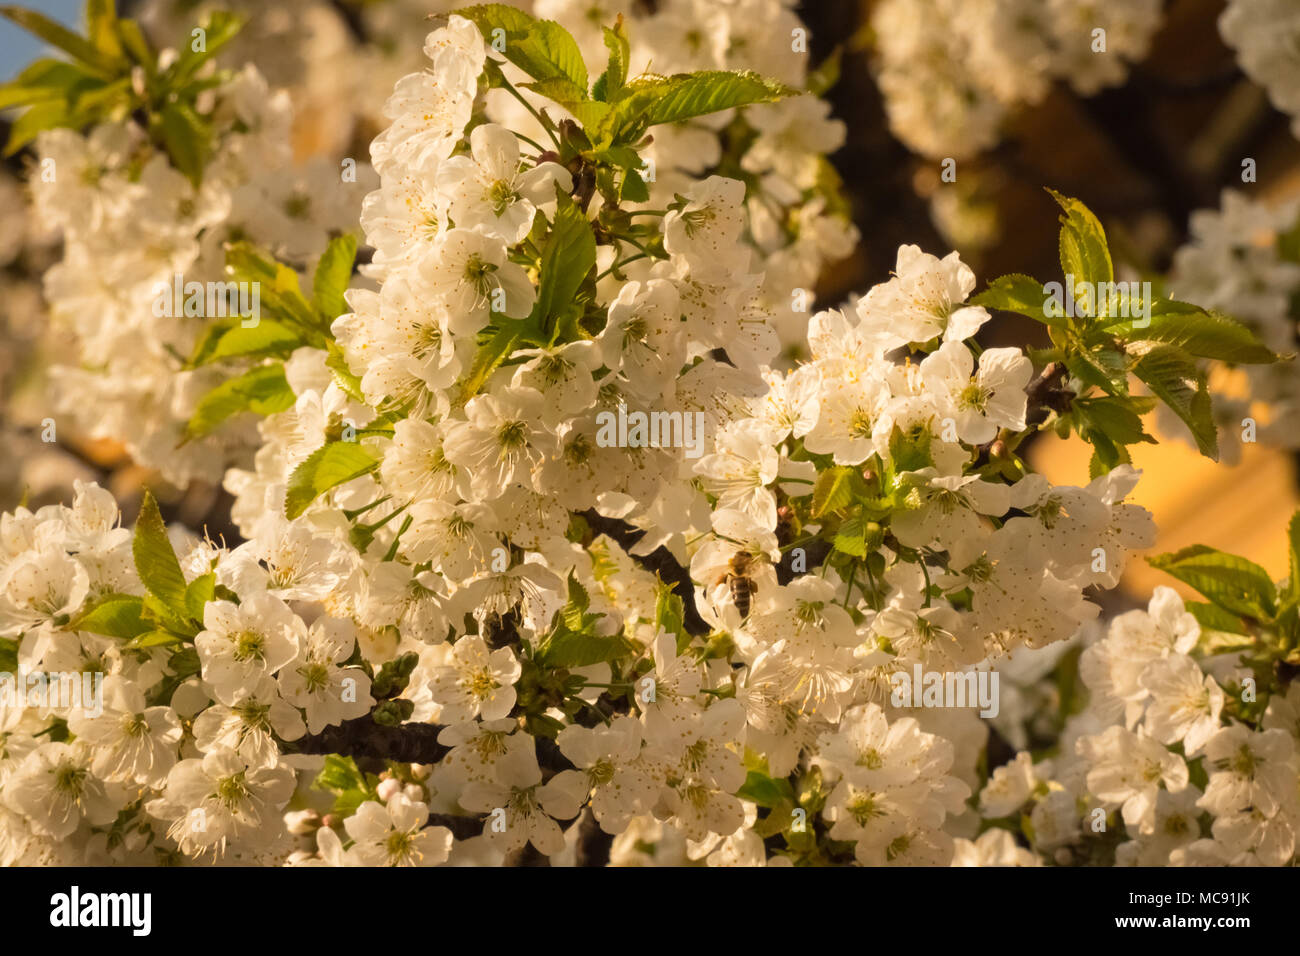 White cherry blossom in the spring season. Prunus avium. Stock Photo